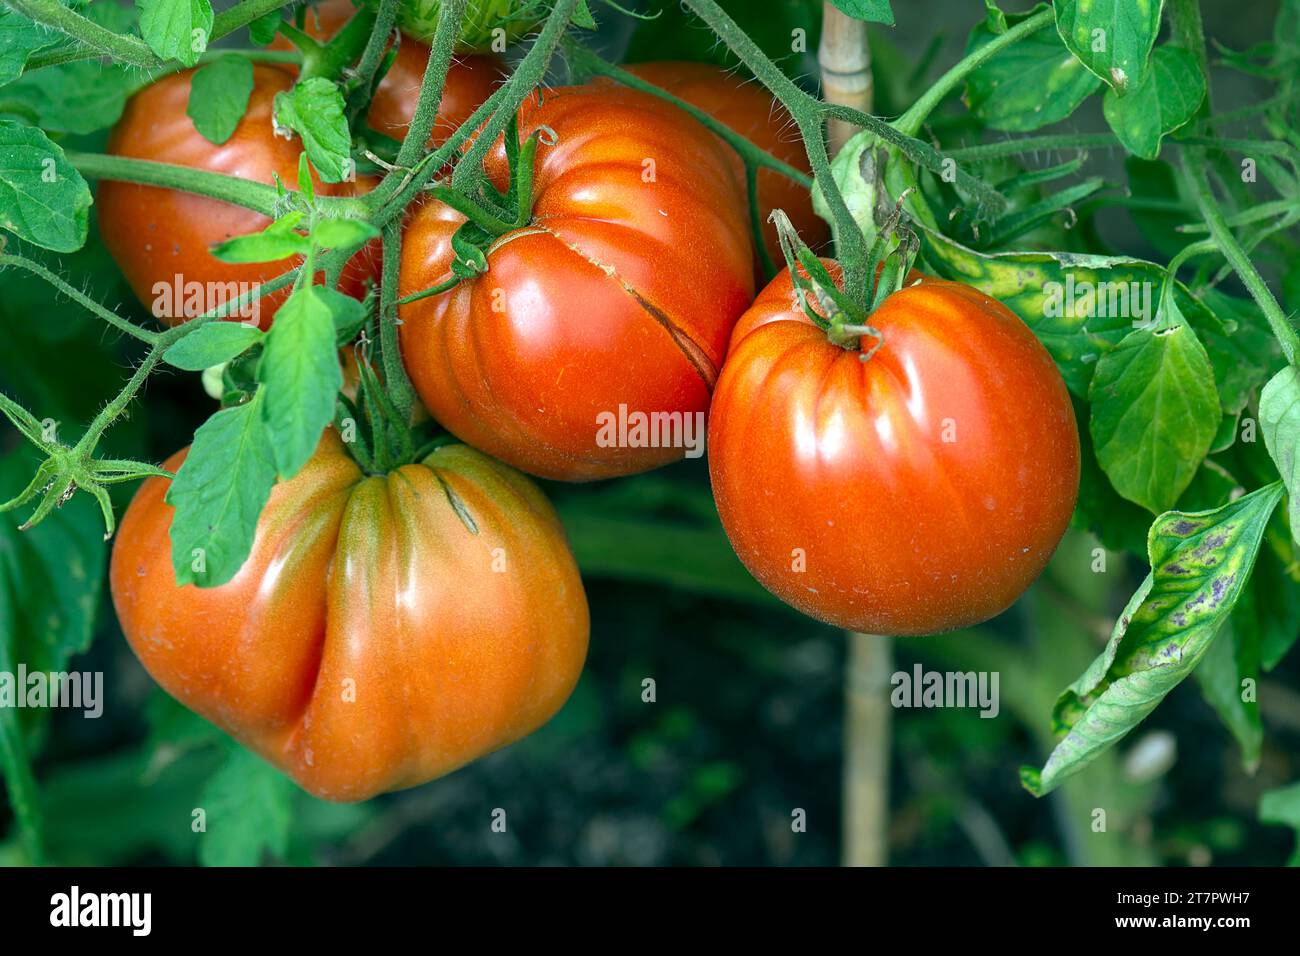 Oxheart tomatoes (Solanum lycopersicum) on the vine, Bavaria, Germany Stock Photo